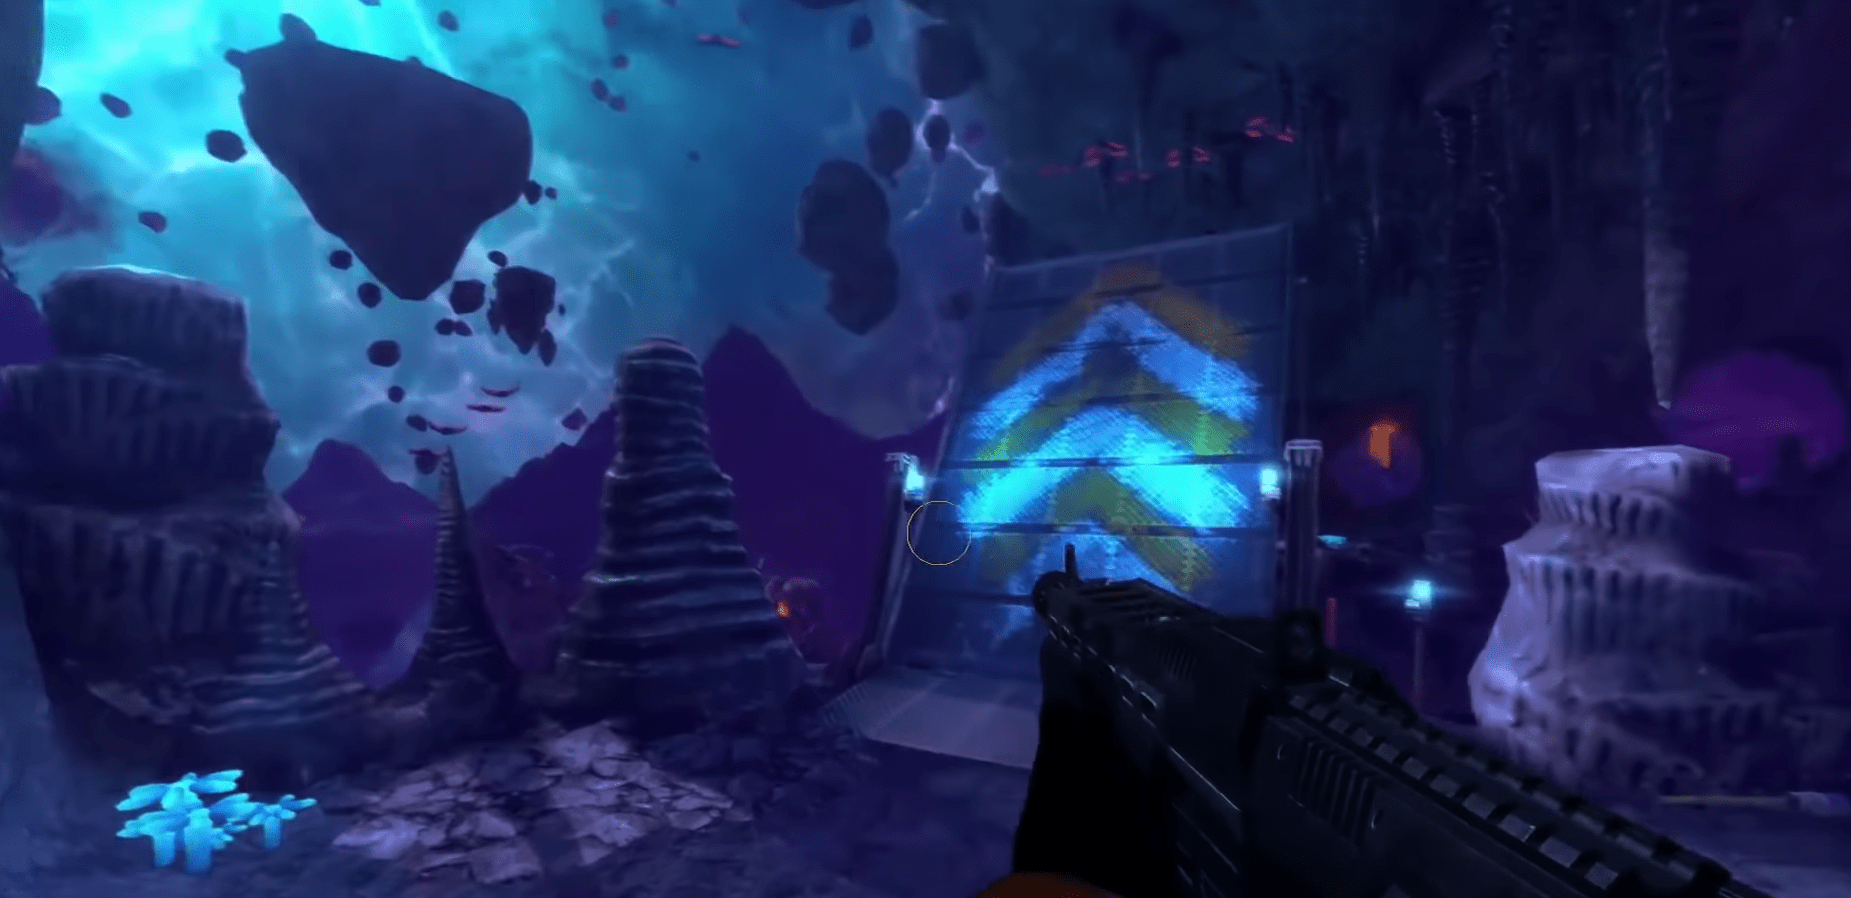 15 минут геймплея Black Mesa: Xen — фанатского ремейка первой части Half-Life